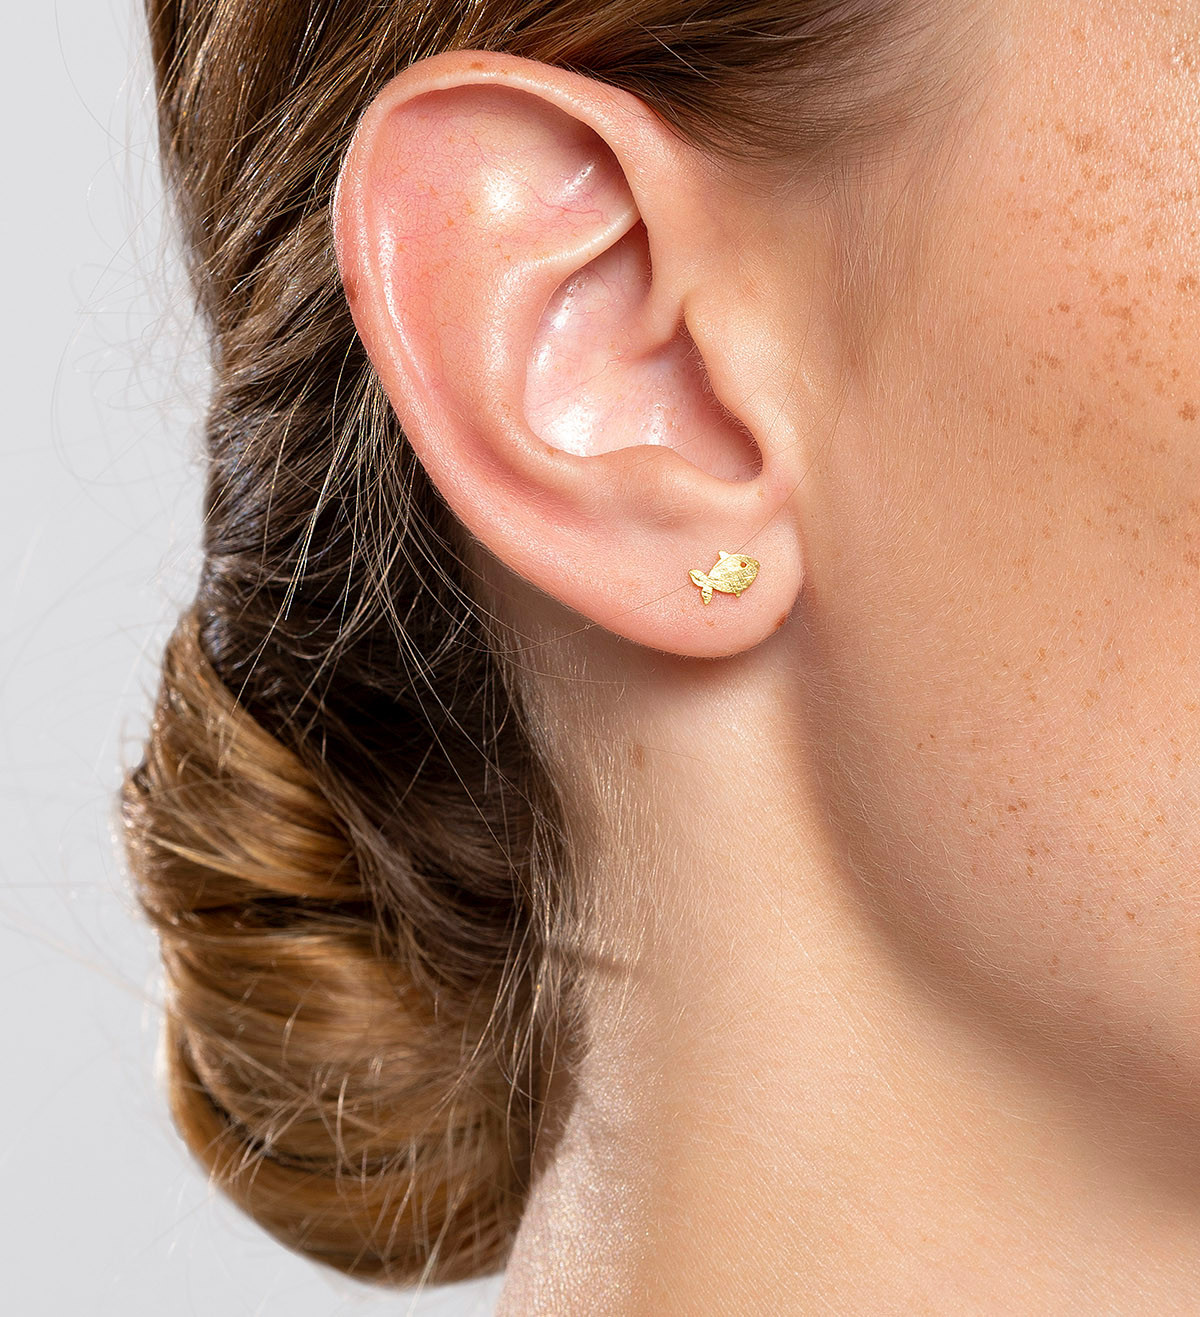 18k gold earrings Símbol fish 5mm